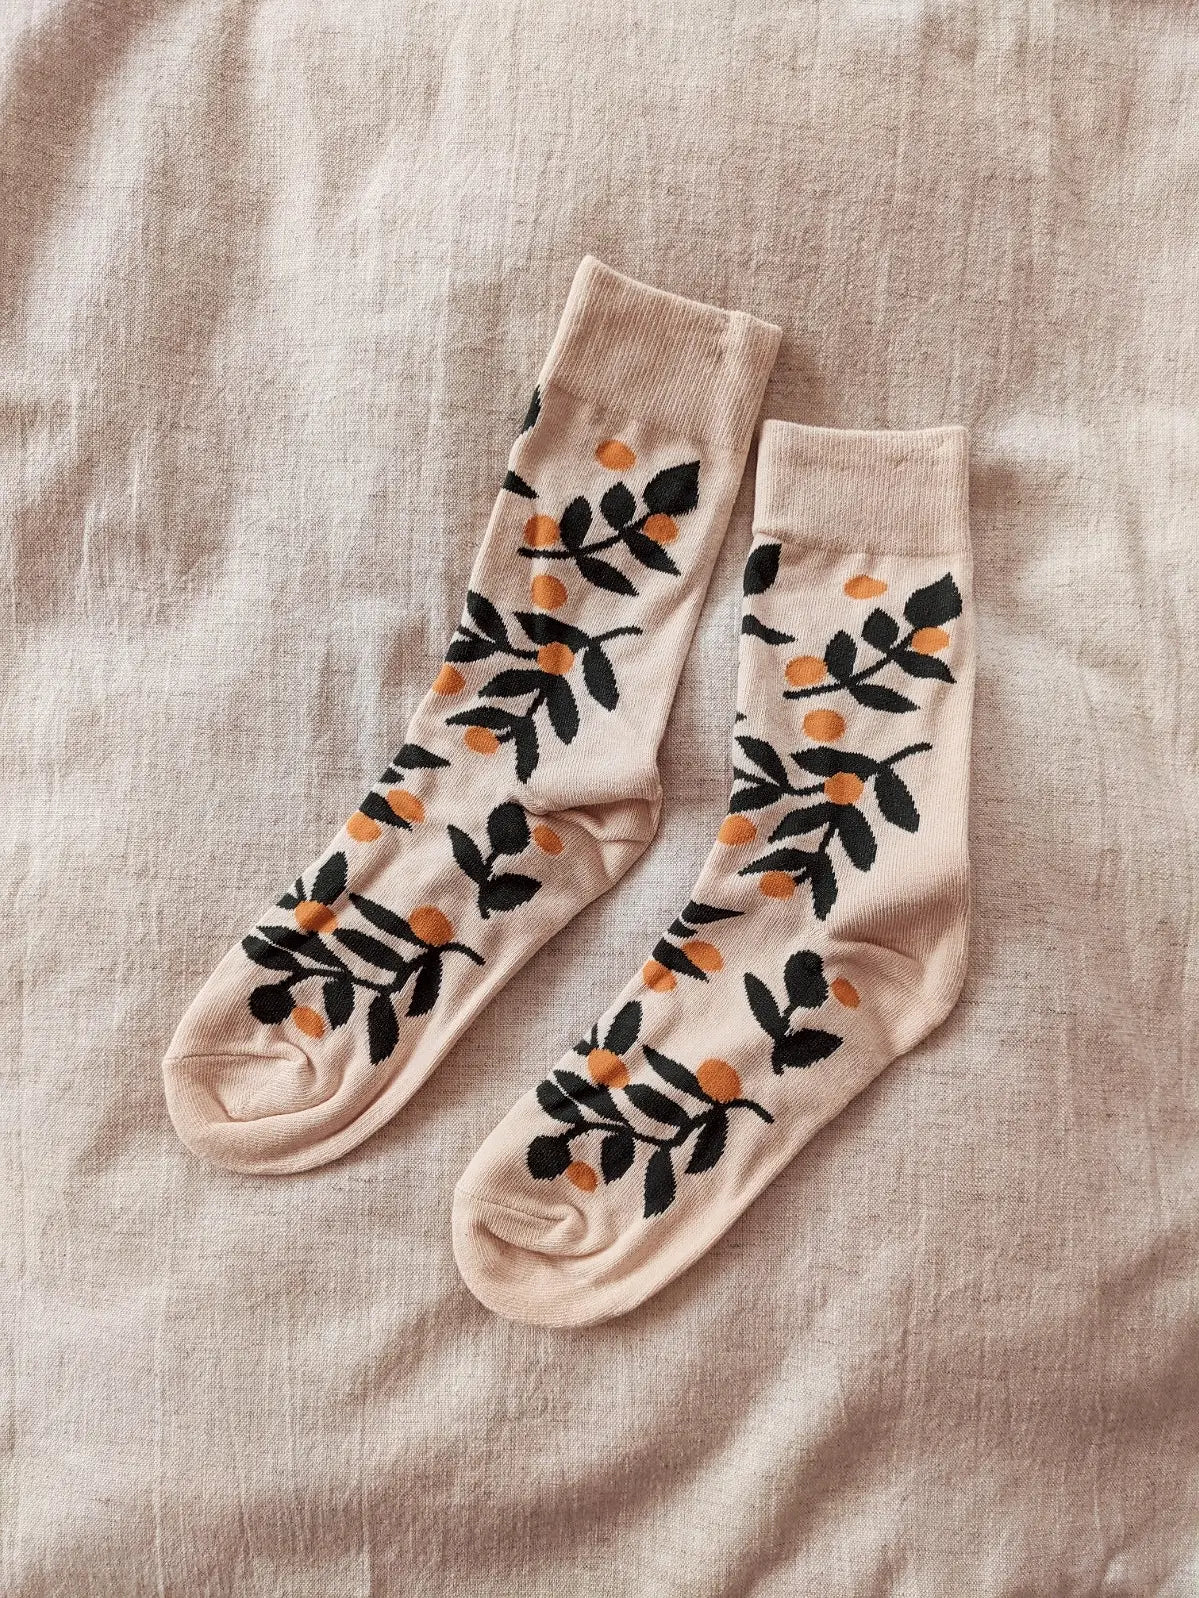 Mimi & August - SS24 - Mandarin Cotton Socks - full display 2